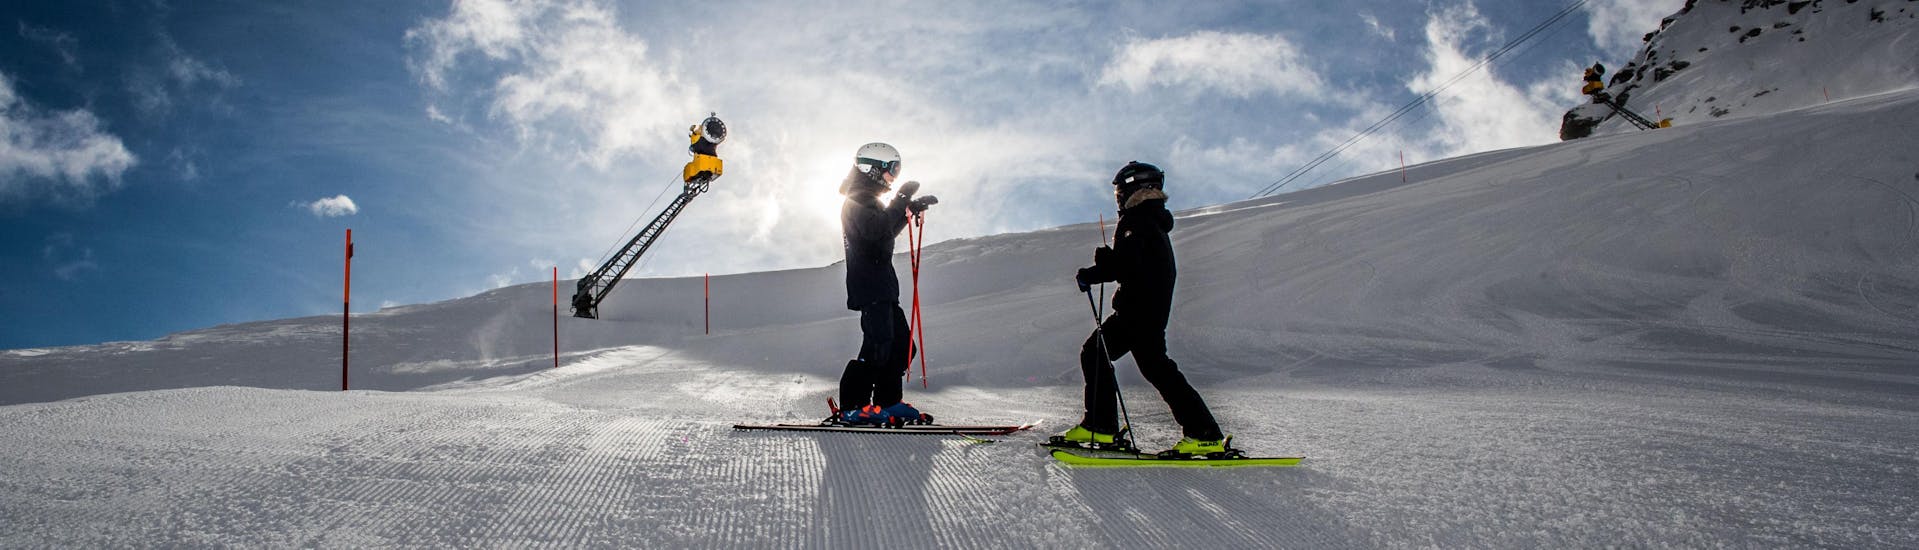 Clases particulares de esquí para niños expertos.